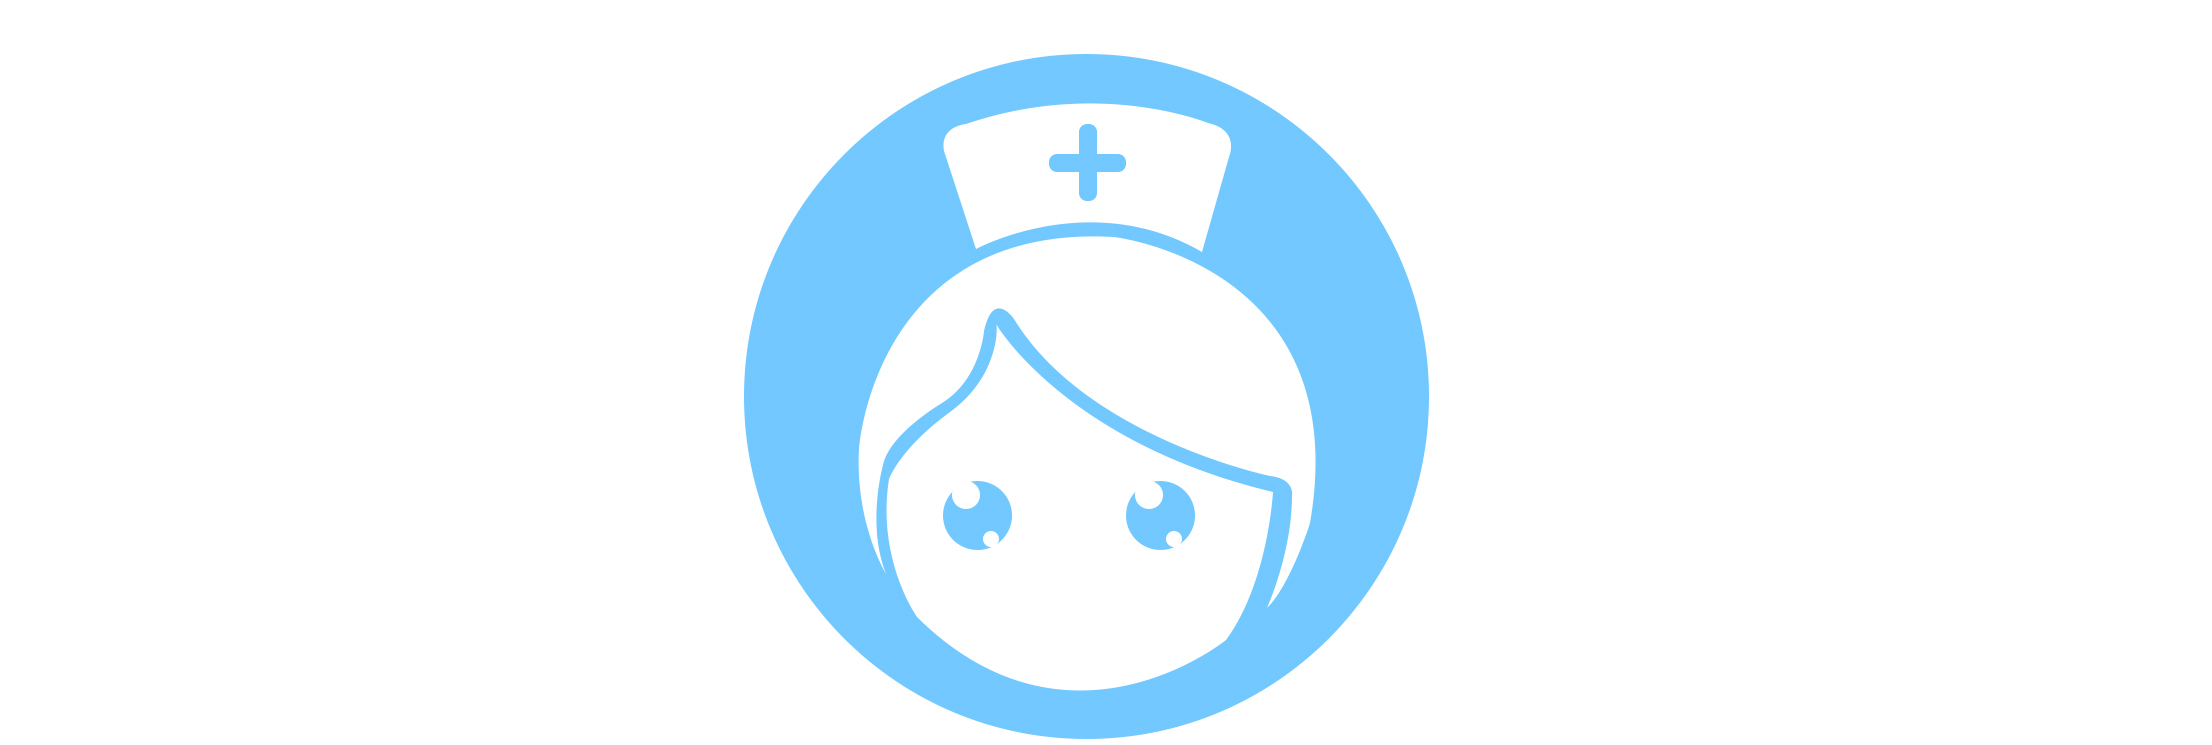 护士培训基地的logo - 找项目 - 天琥云课堂 - 互联网设计在线教育